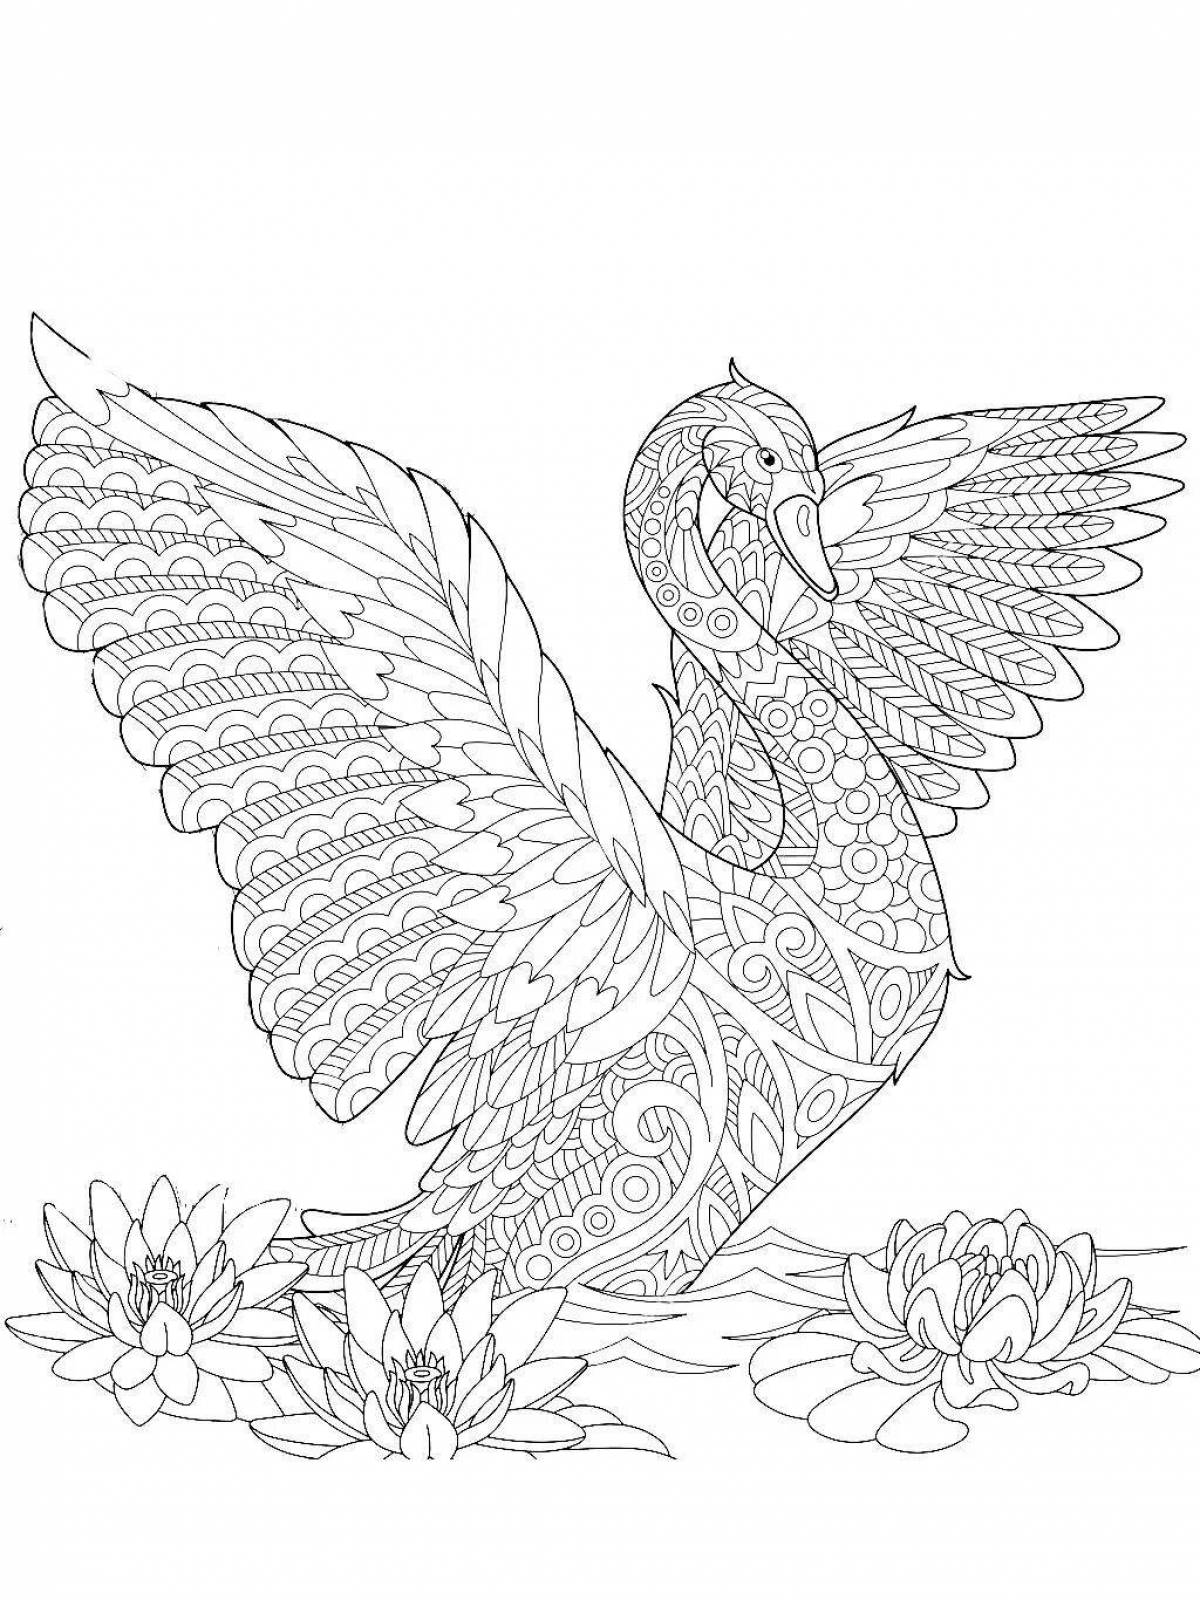 Elegant swan antistress coloring book